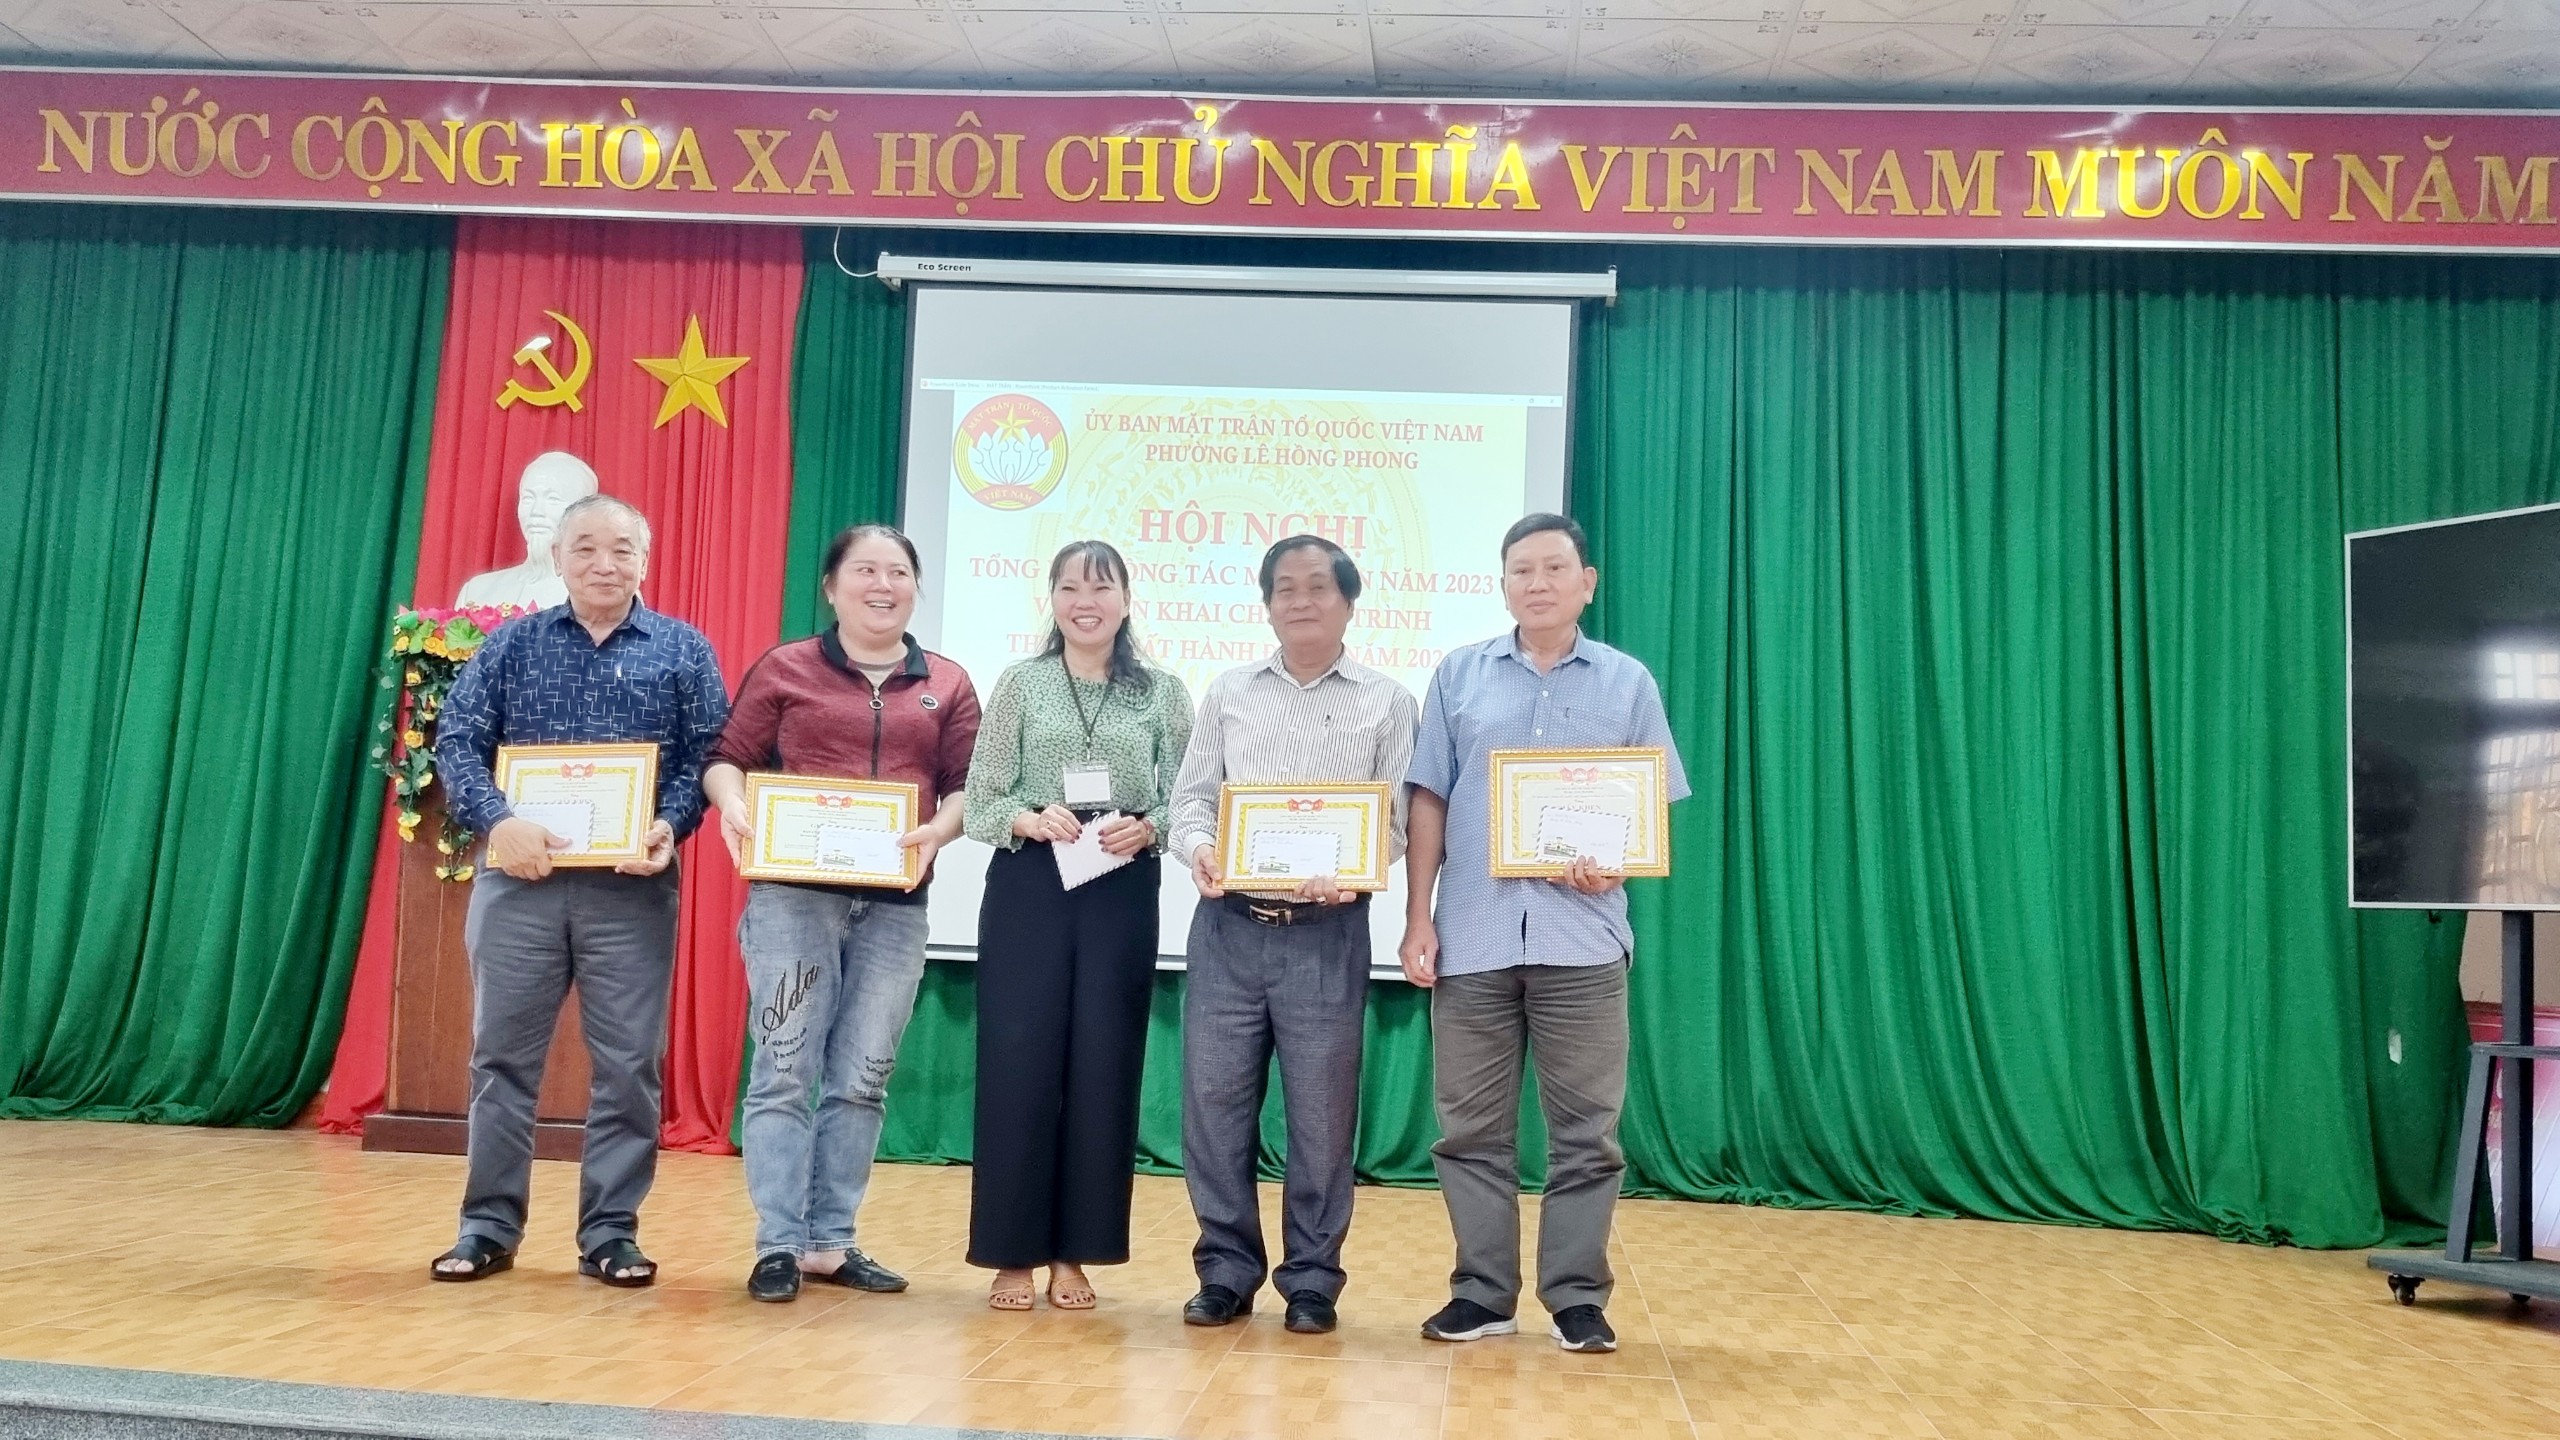 Uỷ ban Mặt trận Tổ quốc Việt Nam phường Lê Hồng Phong tổ chức hội nghị tổng kết Mặt trận năm 2023 và triển khai nhiệm vụ năm 2024.